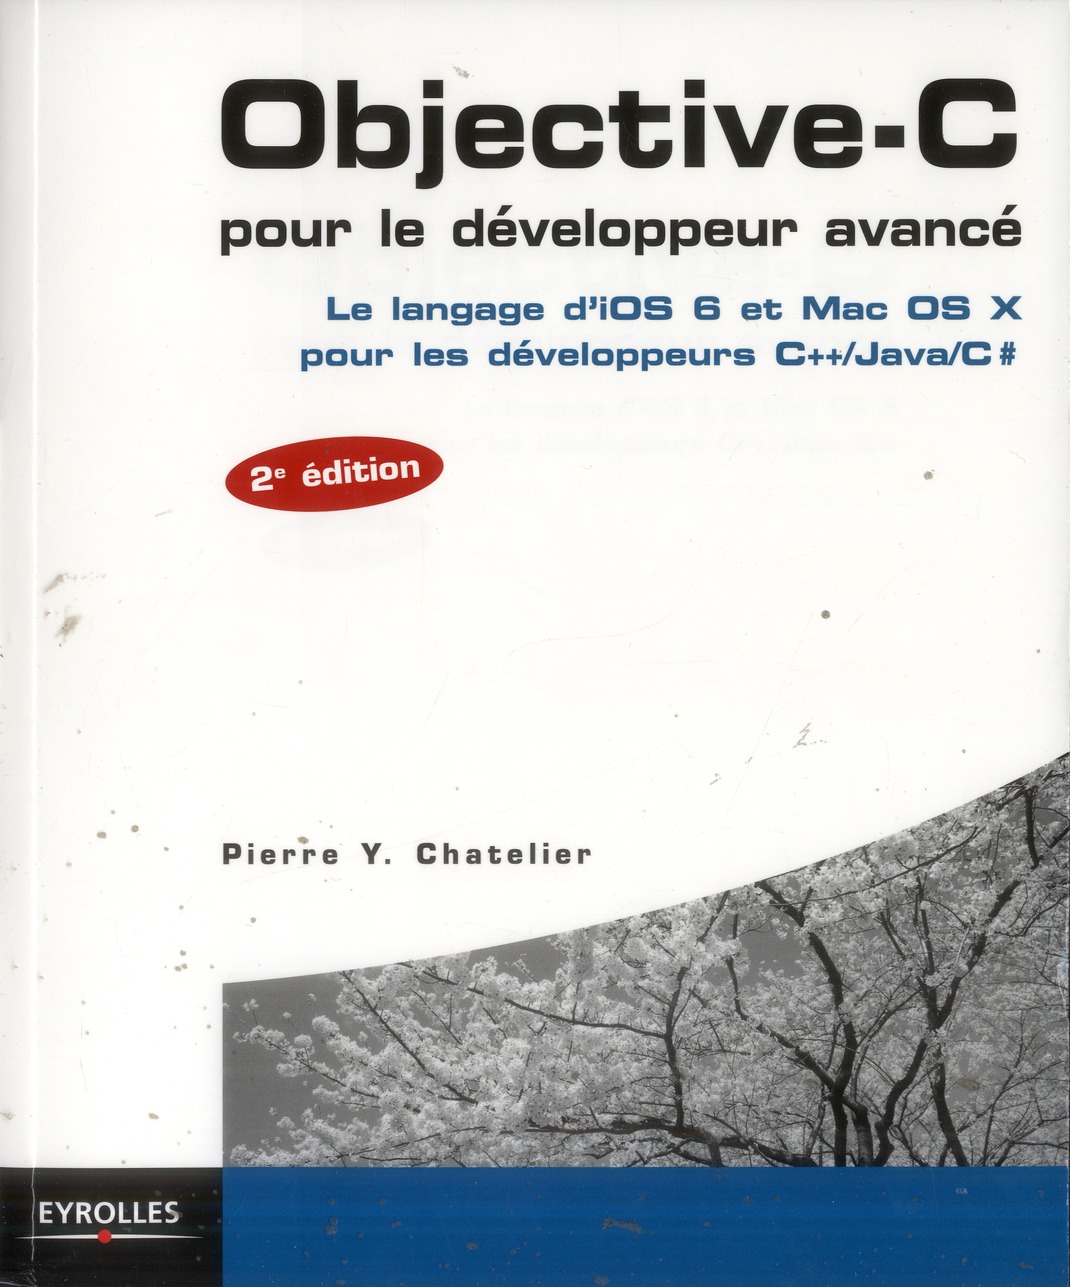 OBJECTIVE-C POUR LE DEVELOPPEUR AVANCE - LE LANGAGE D'IOS 6 ET MAC OS X POUR LES DEVELOPPEURS C++/JA